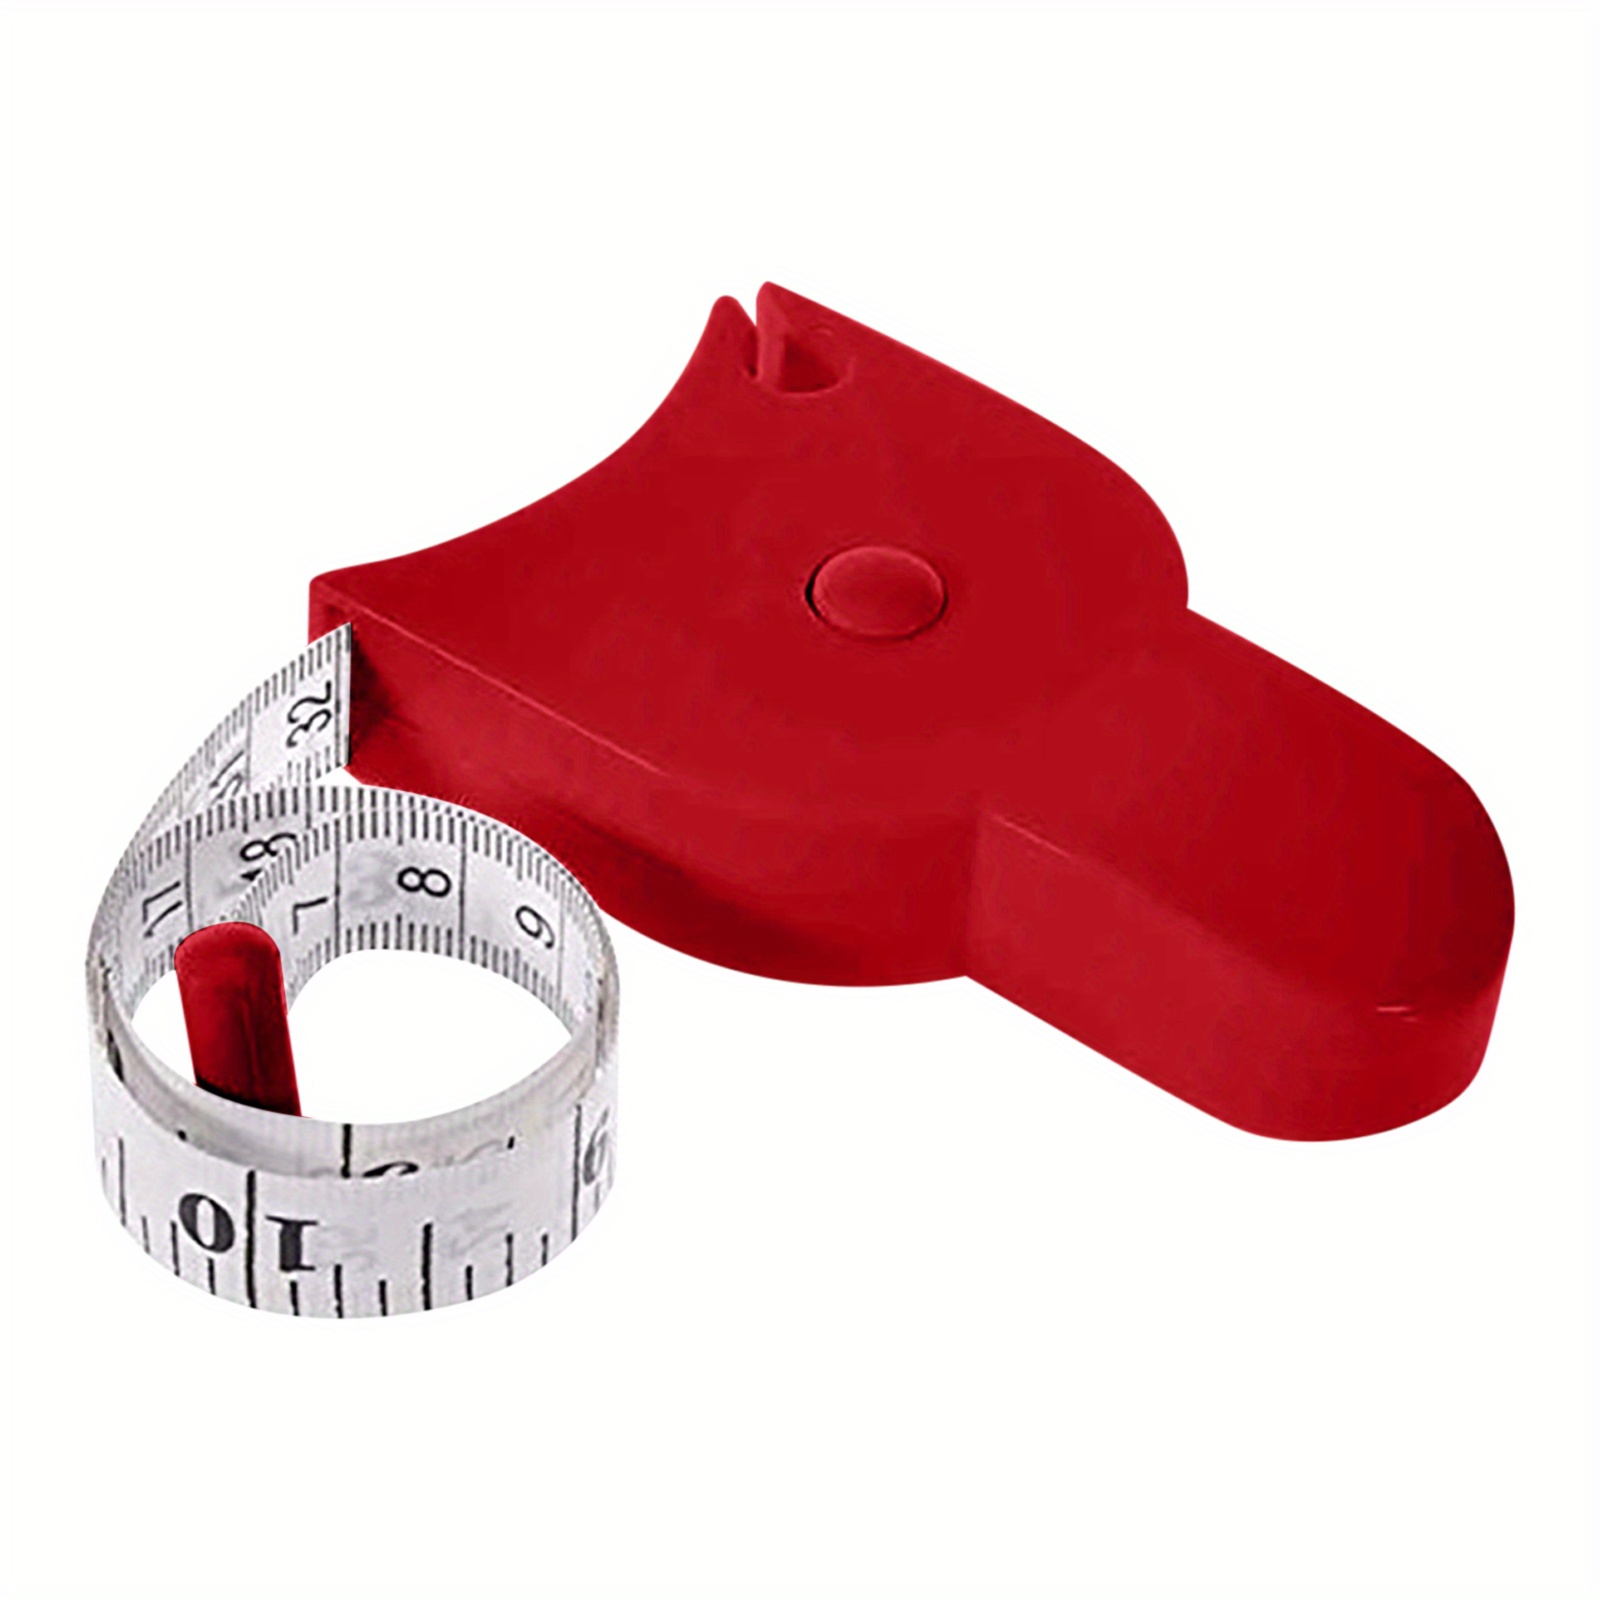 Y Shape Body Measuring Tape Plastic Arm Measurement Portable